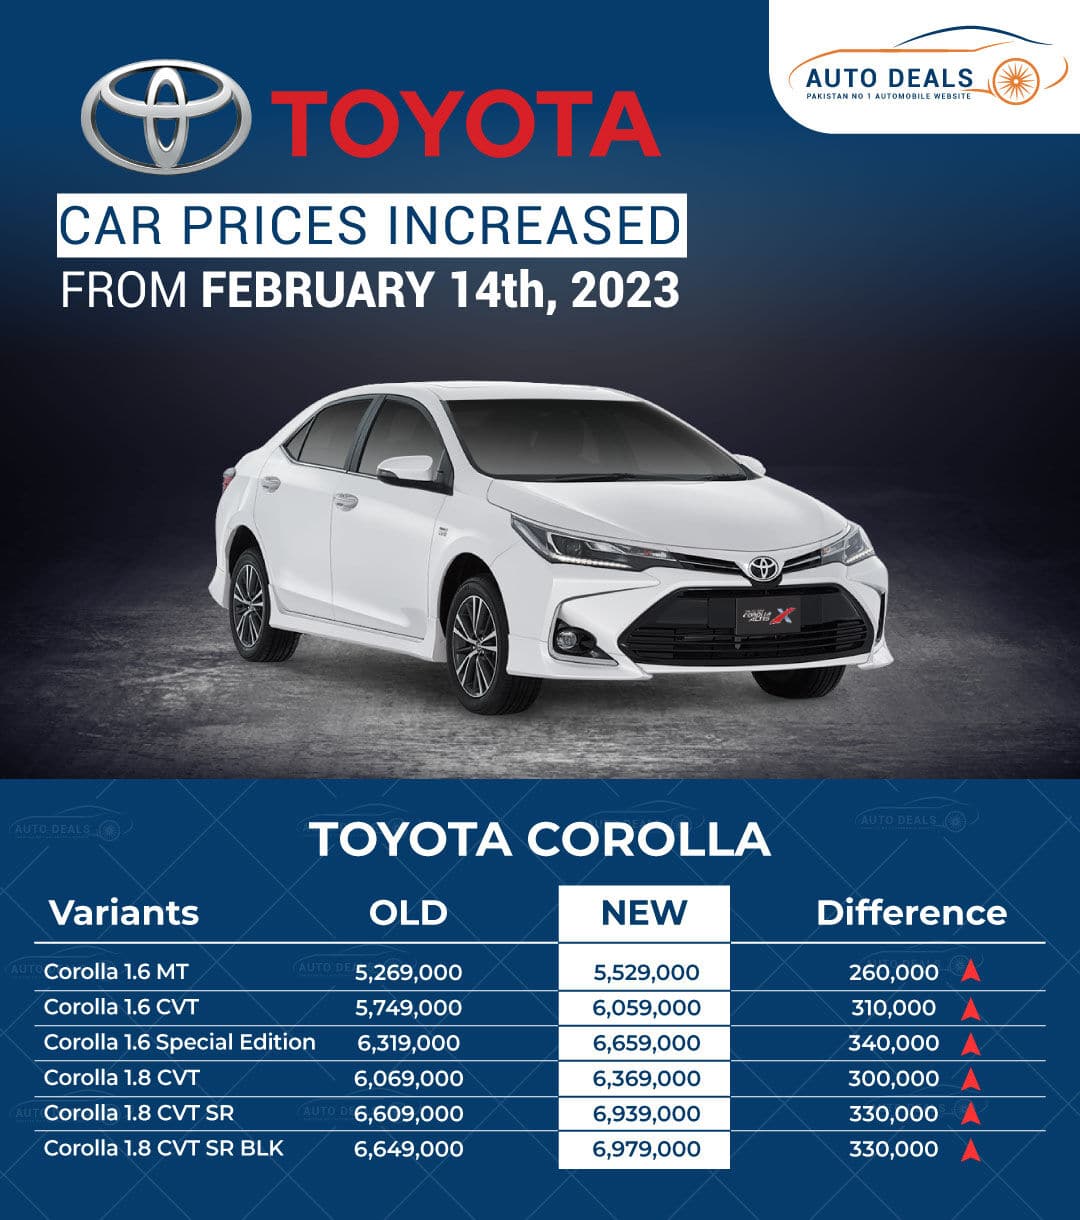 Toyota Corolla New Prices